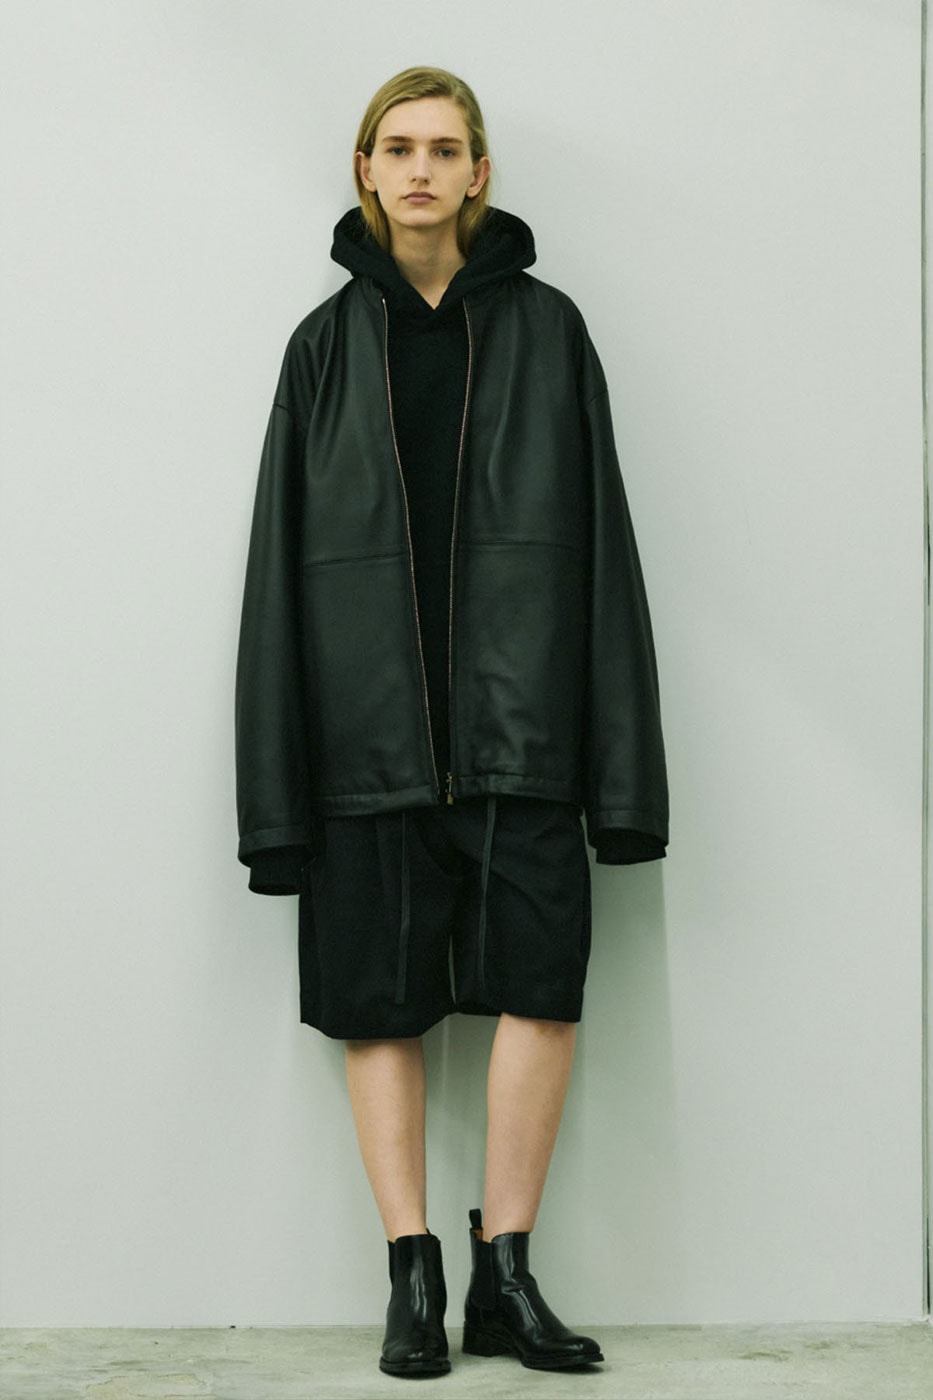 Stein SS22 Lookbook outwear jackets Japan lookbooks Spring Summer 2022 